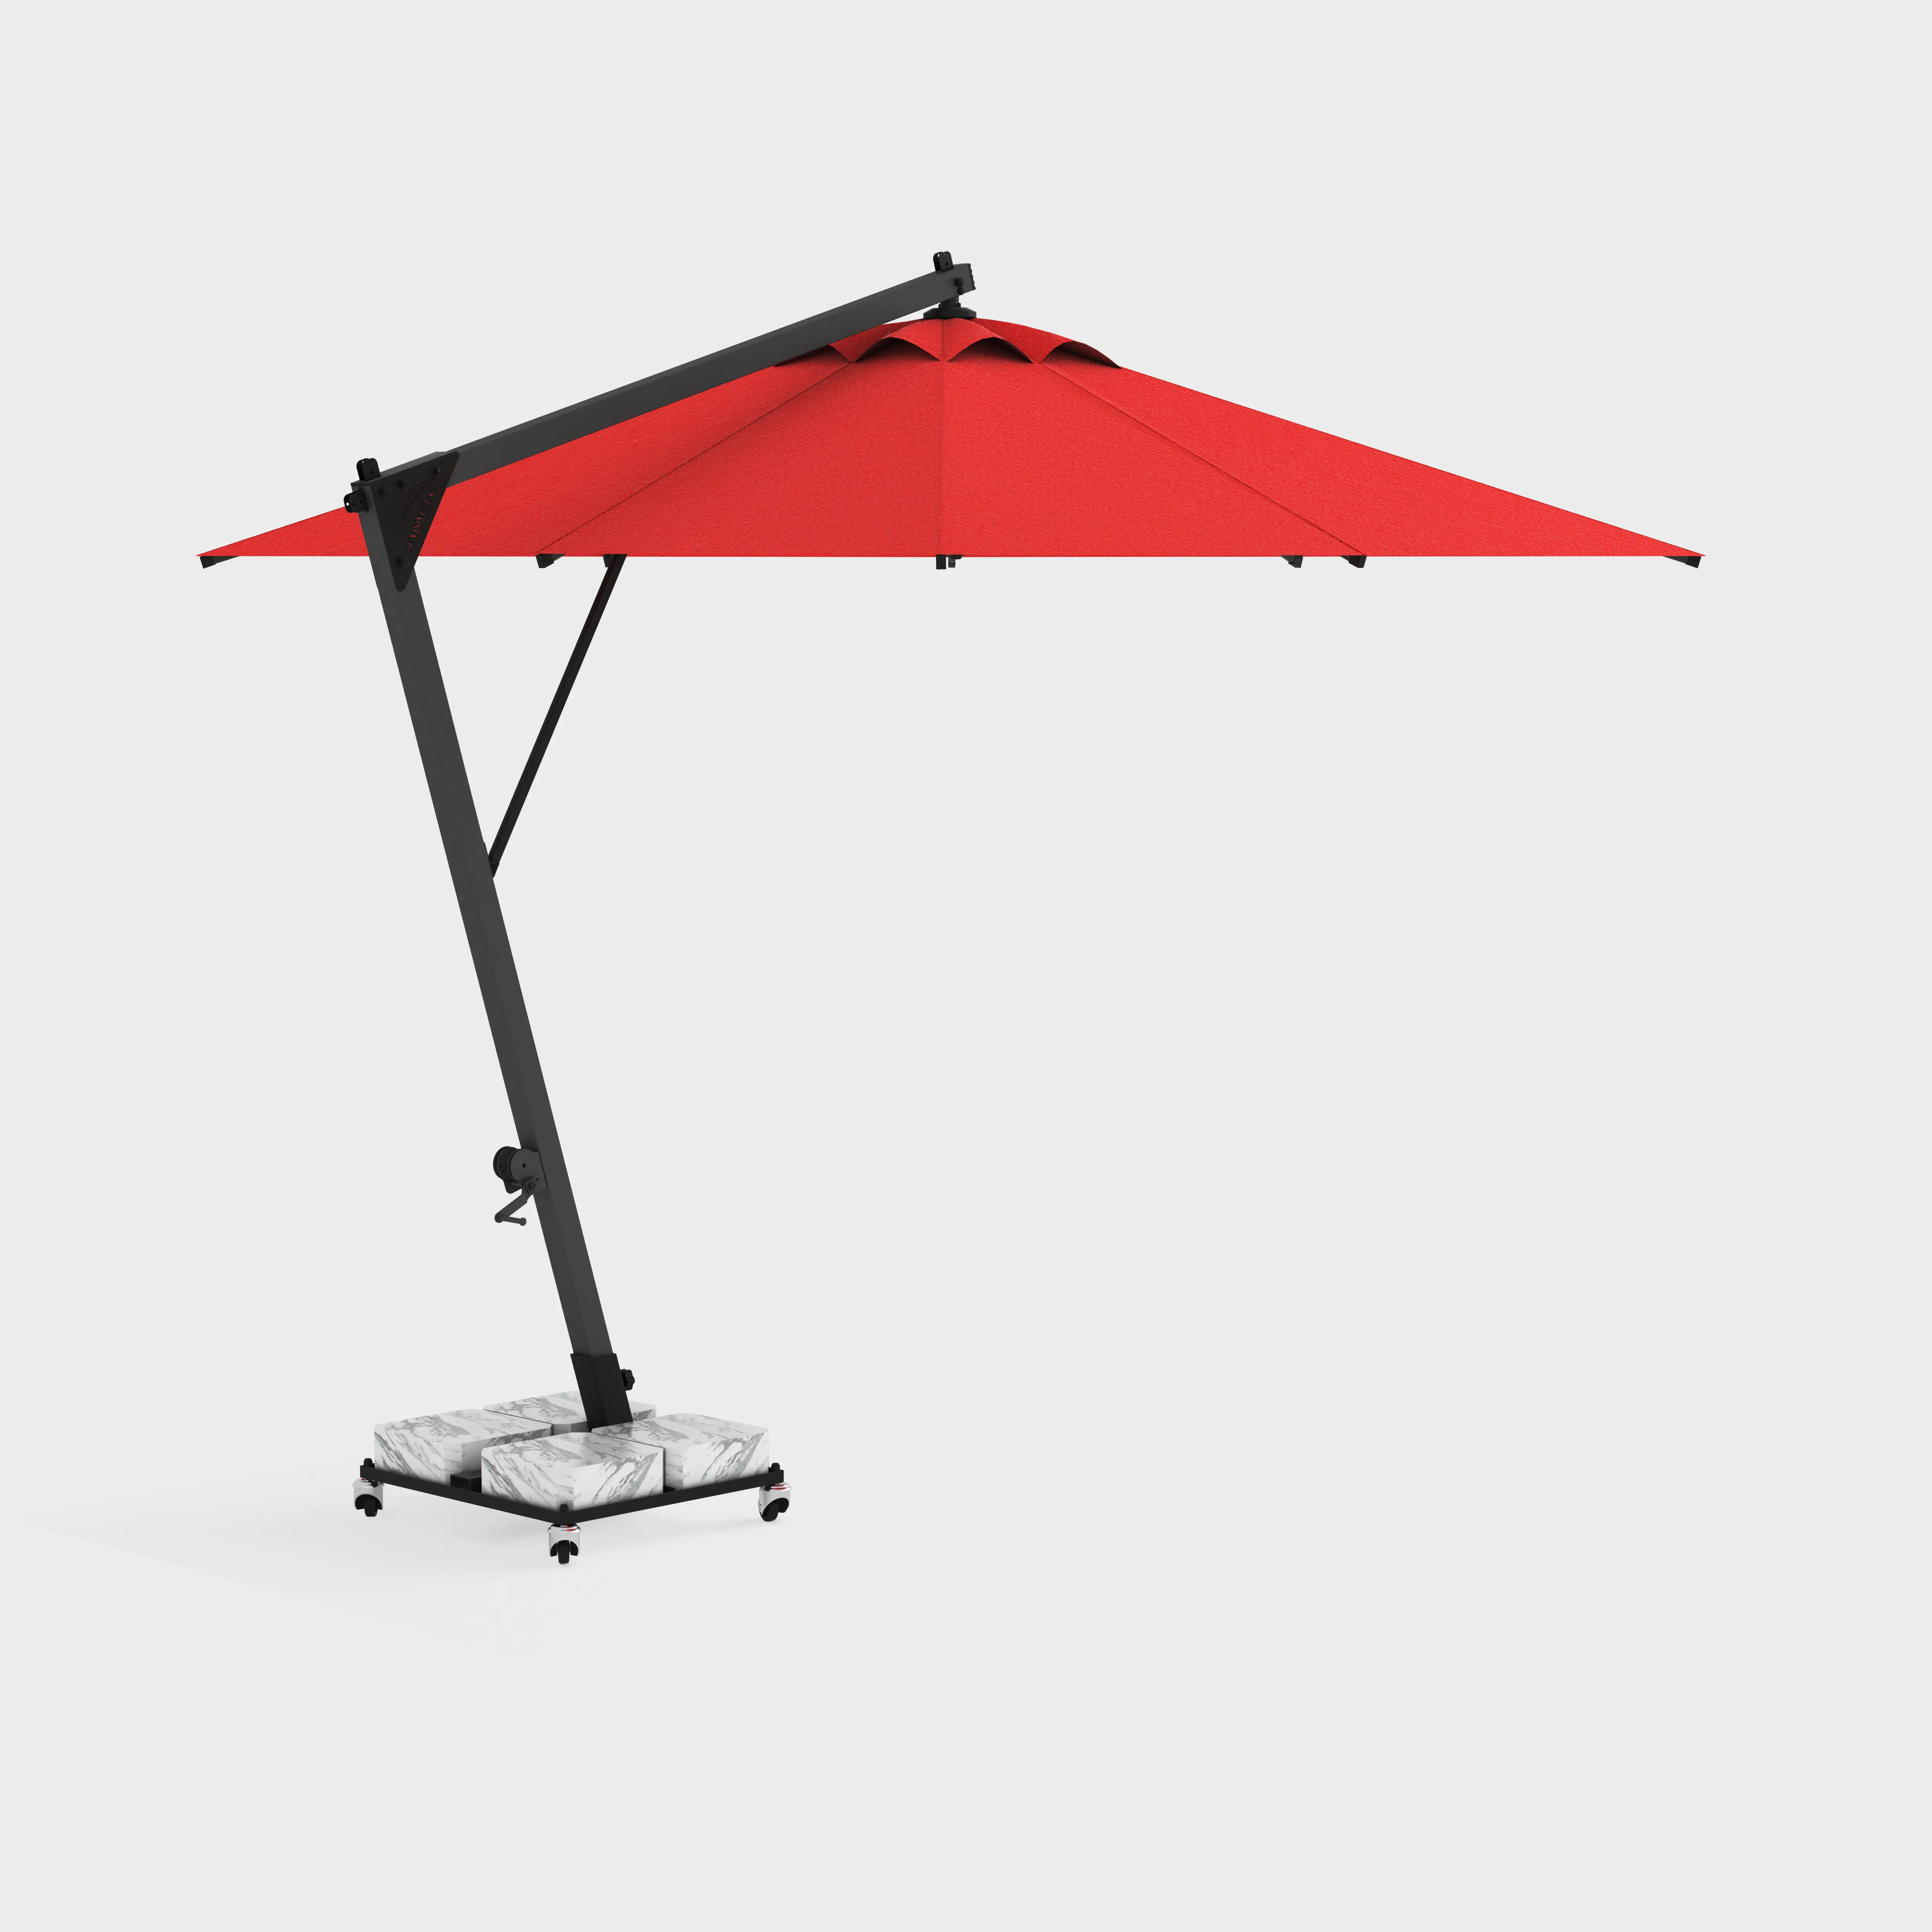 Banana Classic Side Pole Circular Umbrella 400cm High Quality Parasol For Hotel Outdoor Beach Garden Umbrella Parasol